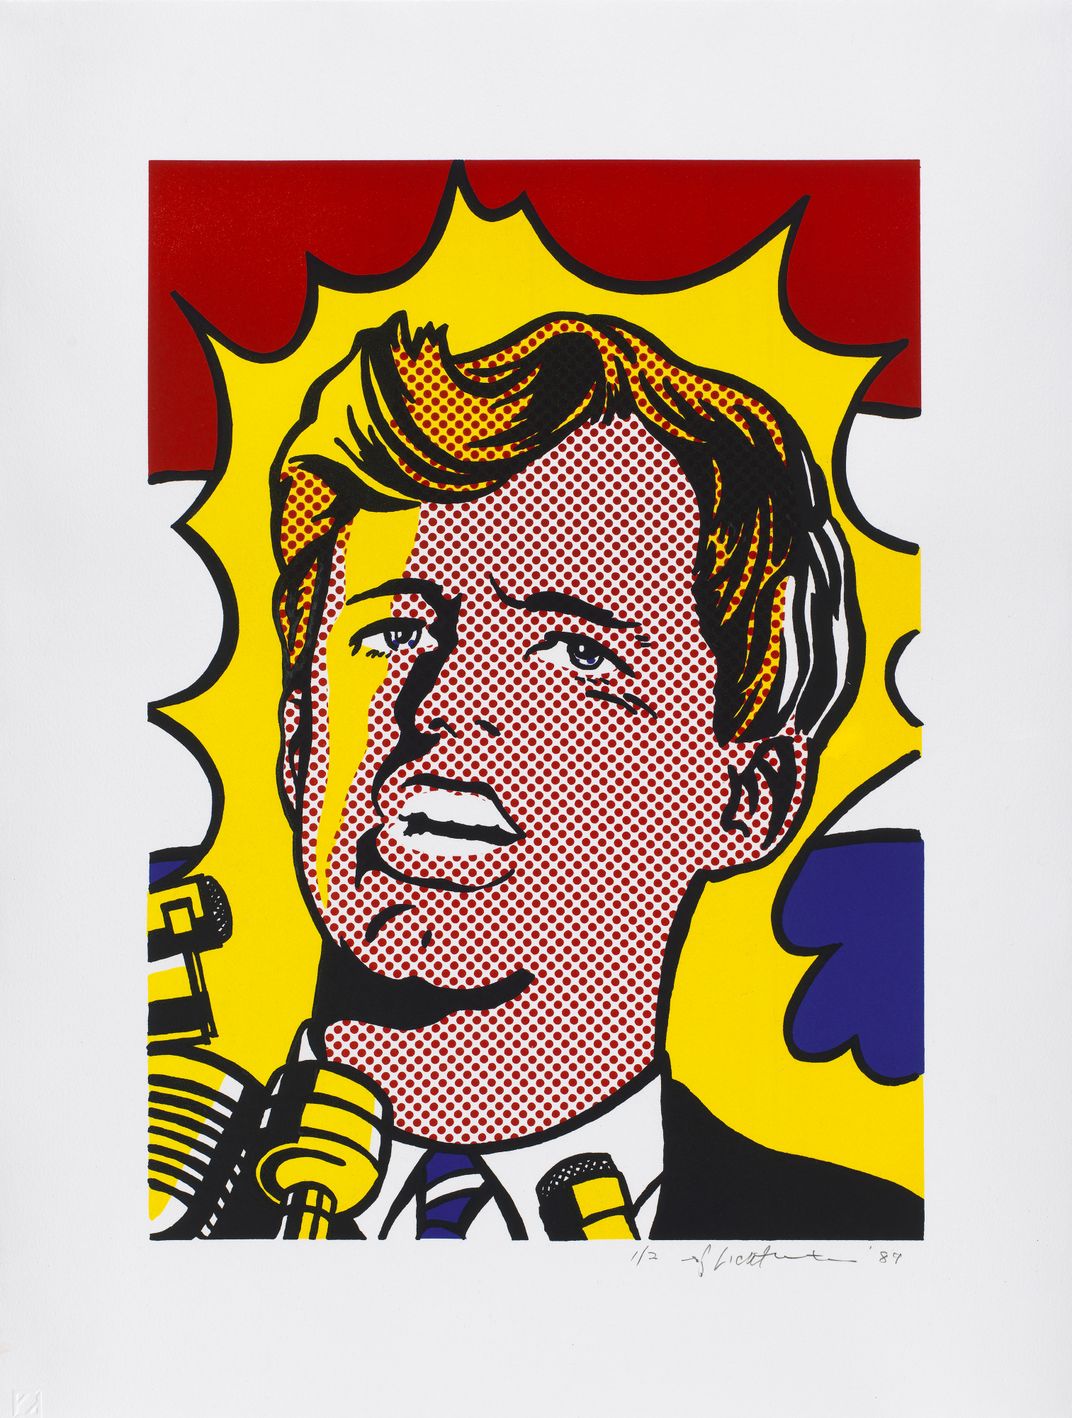 Robert F. Kennedy by Roy Lichtenstein